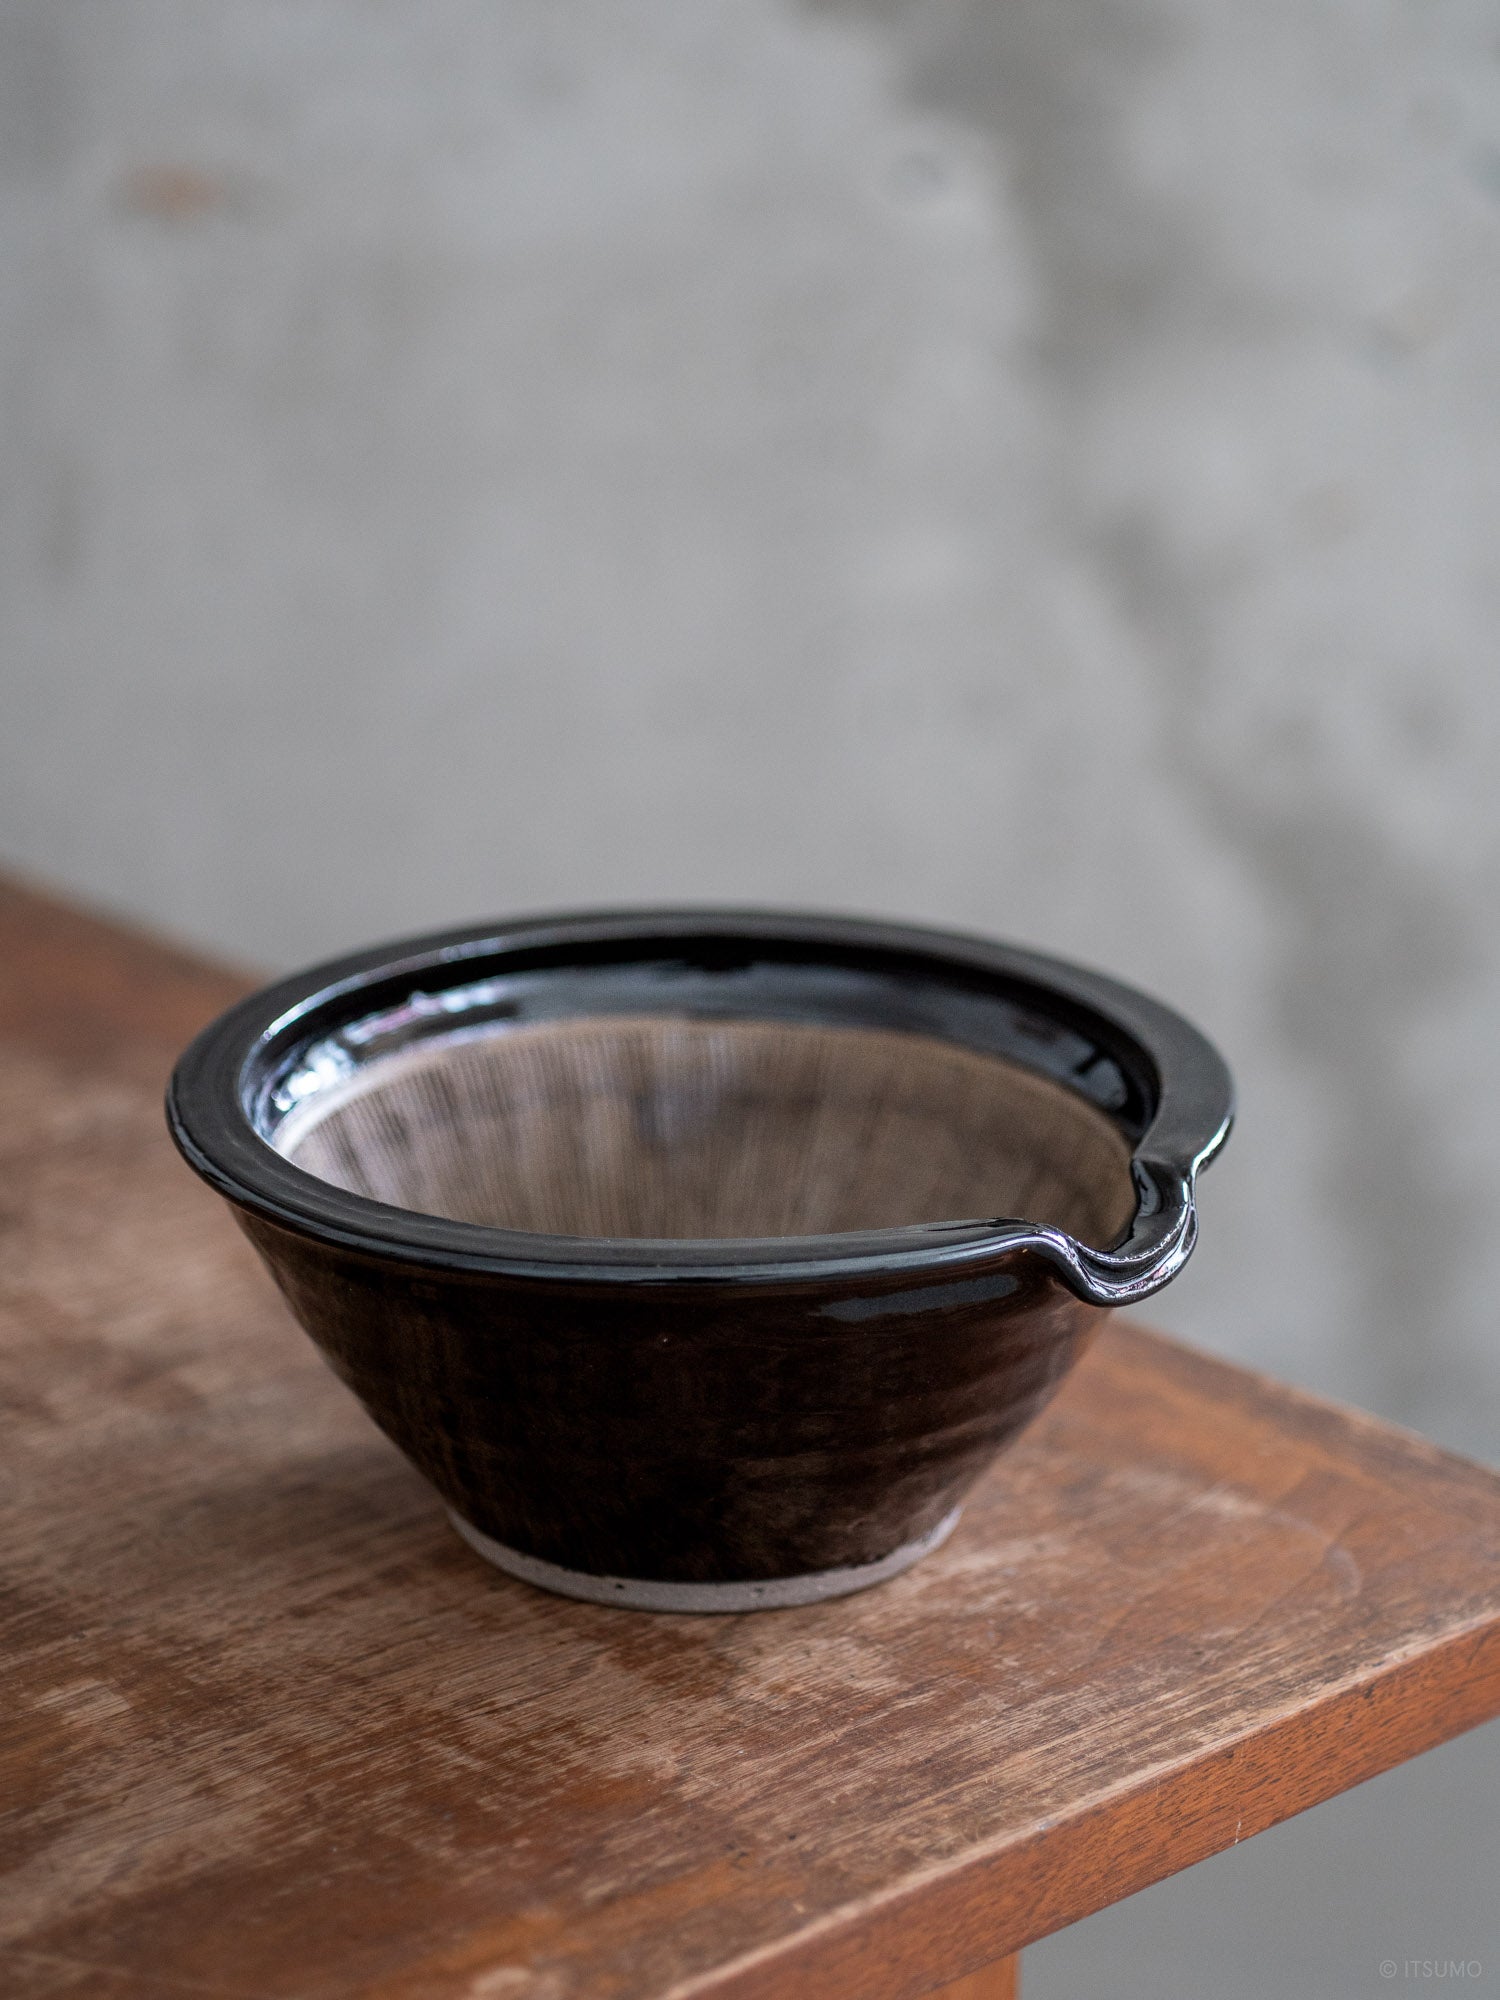 Iga suribachi mortar in black glaze, using iga-ware pottery techniques